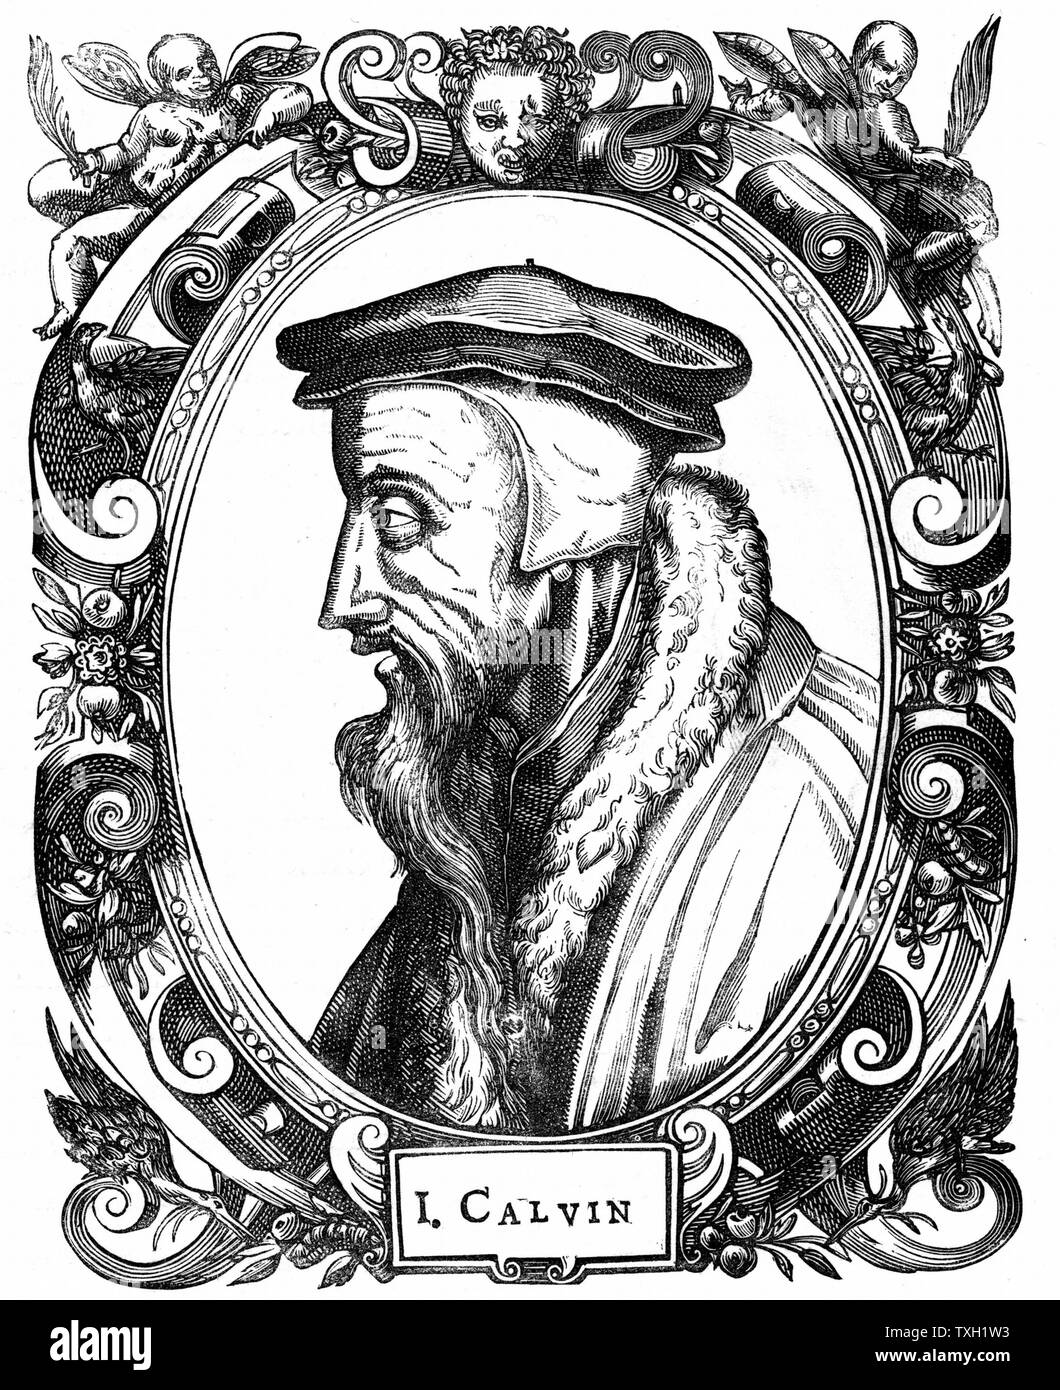 Jean Calvin teólogo francés y el reformador protestante. Se radicó en Ginebra y fue figura destacada en la Reforma Protestante. Él dio su nombre a la doctrina protestante, el calvinismo. Xilografía Foto de stock